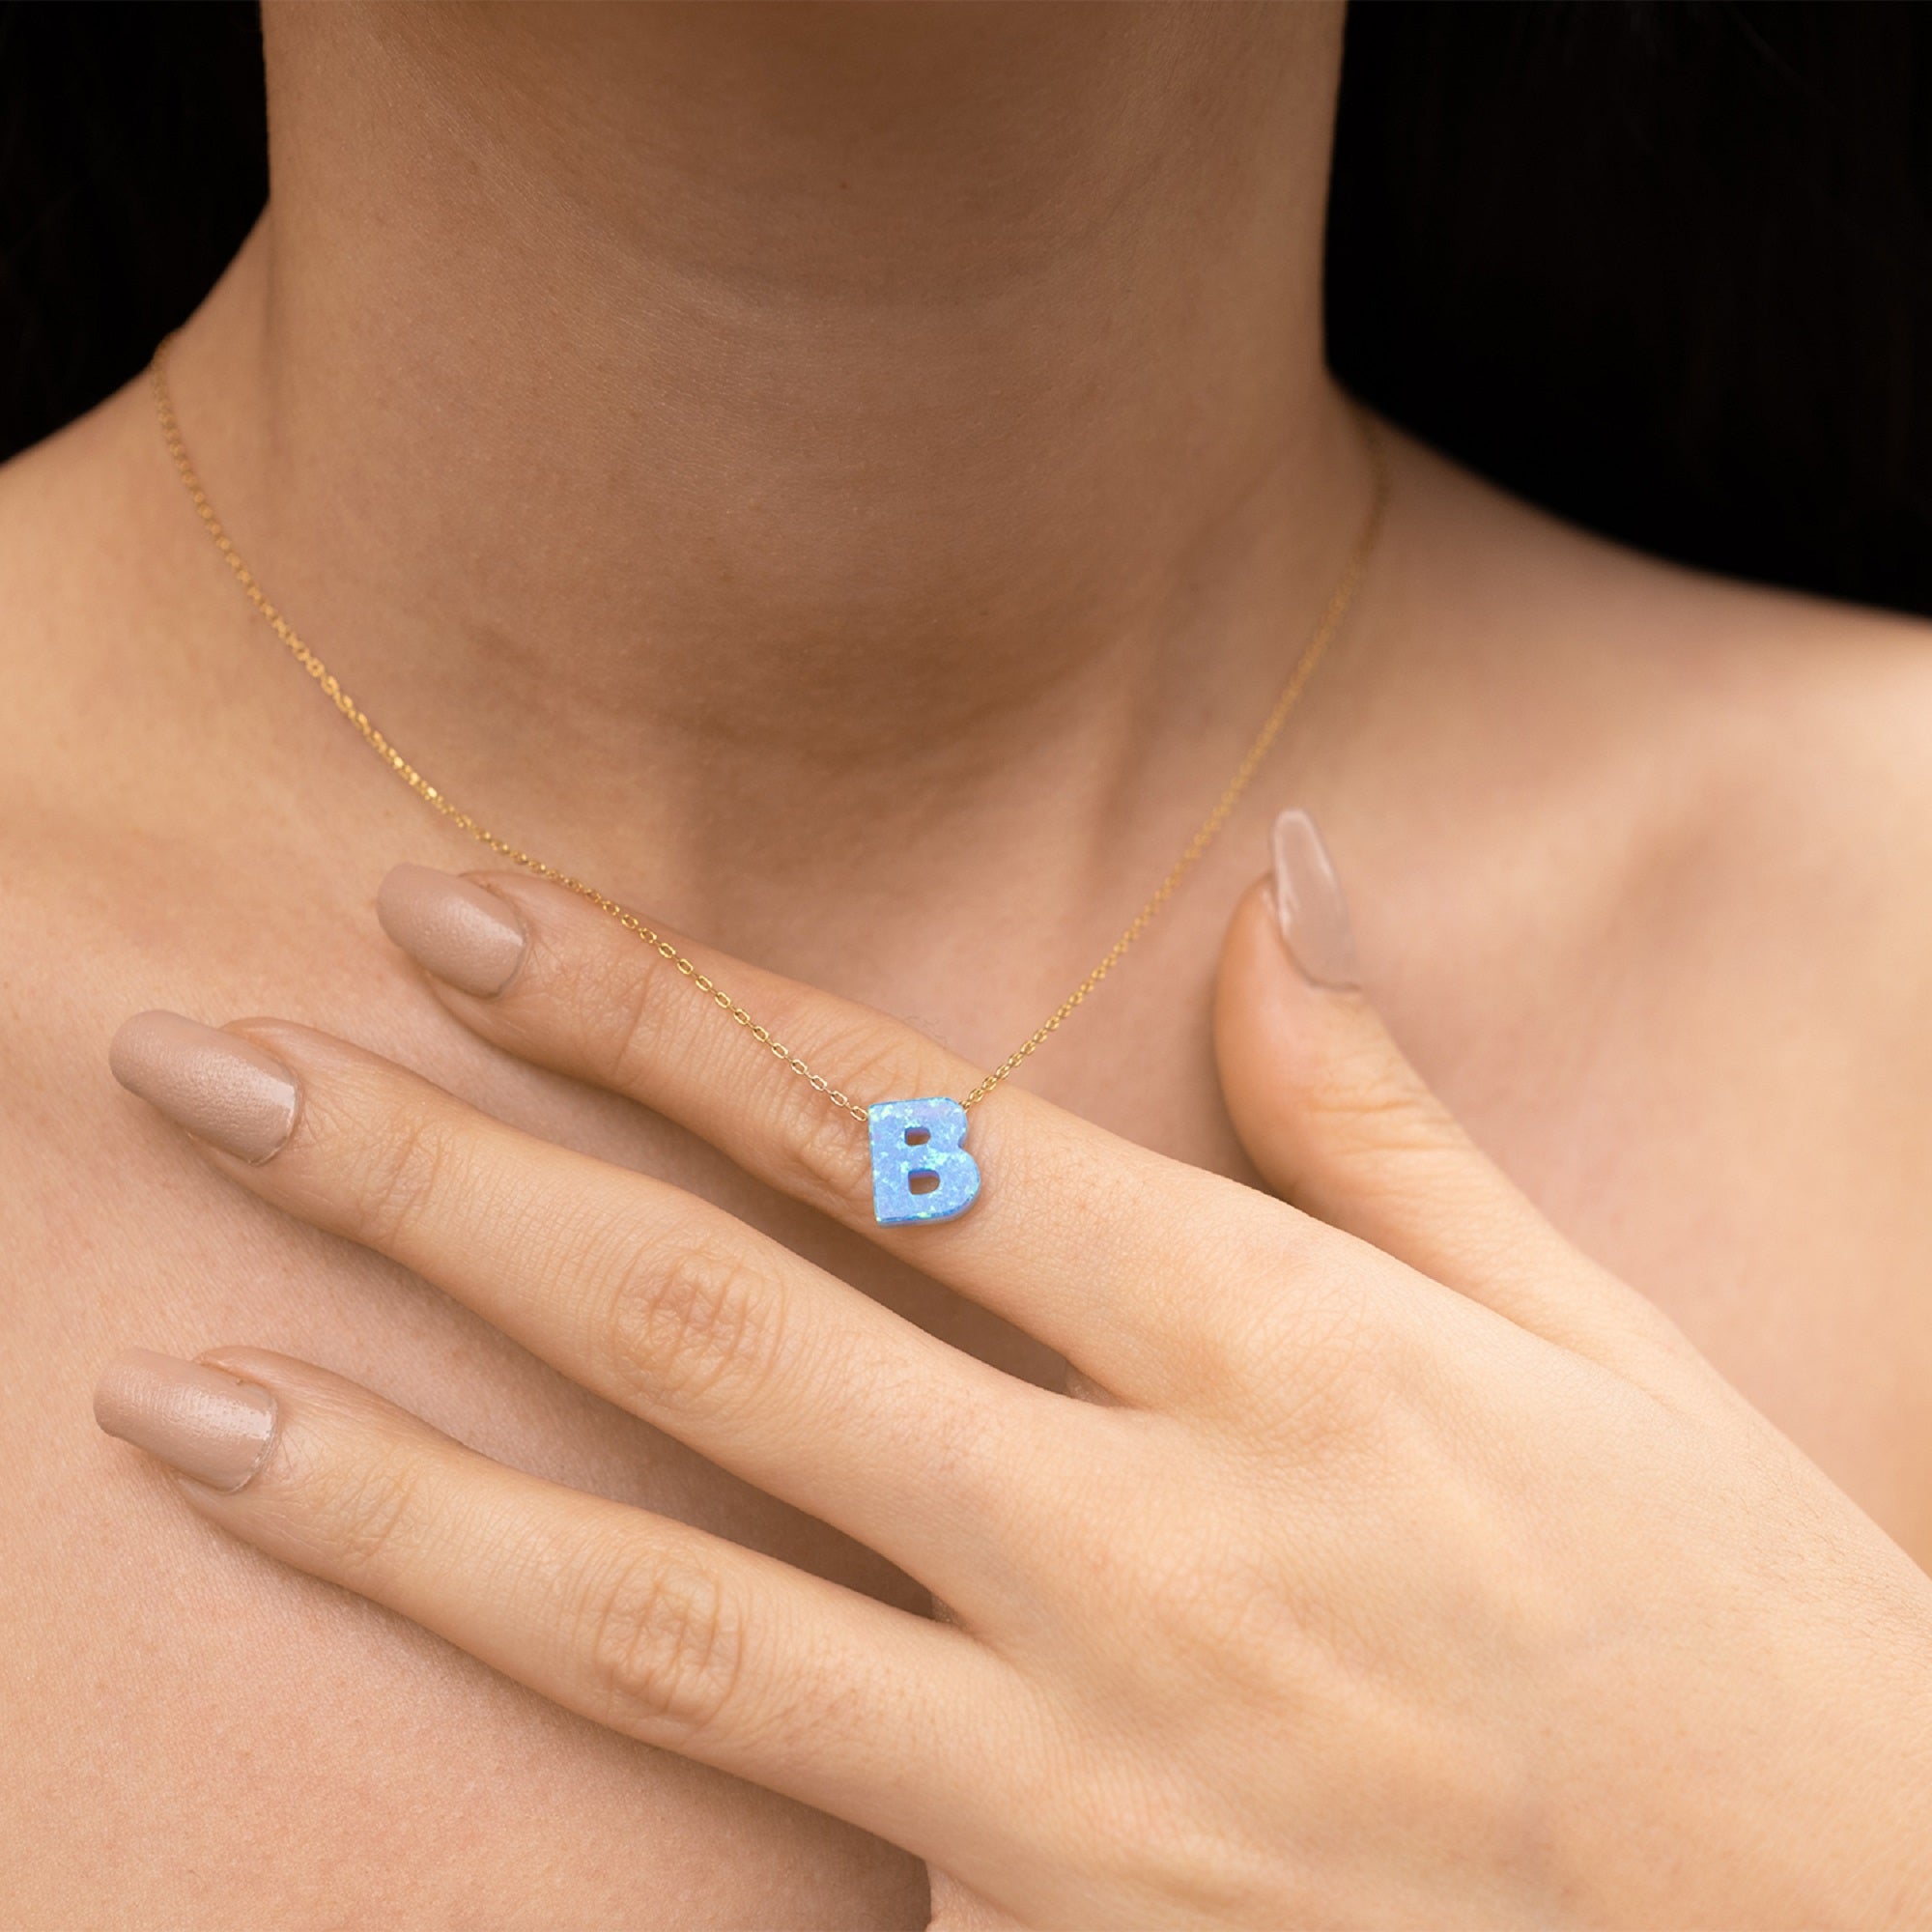 Blue Opal Initial Necklace - B letter Pendant